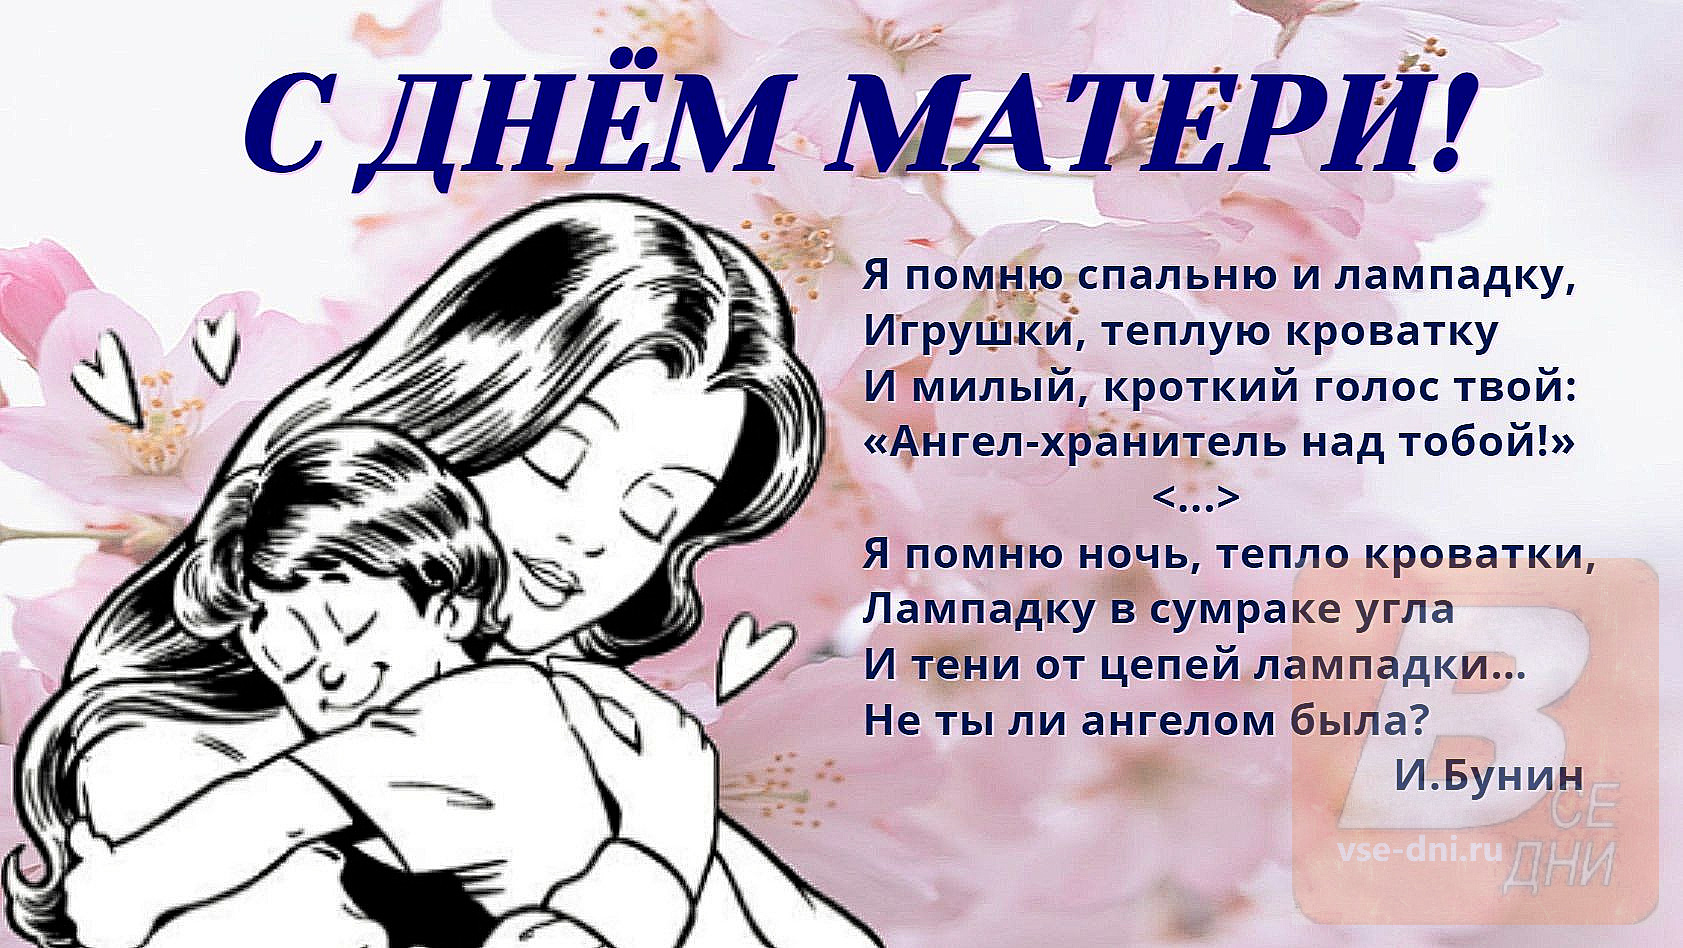 День матери проведен. День матери. С днём матери поздравления. День матери в России. С днём матери картинки.